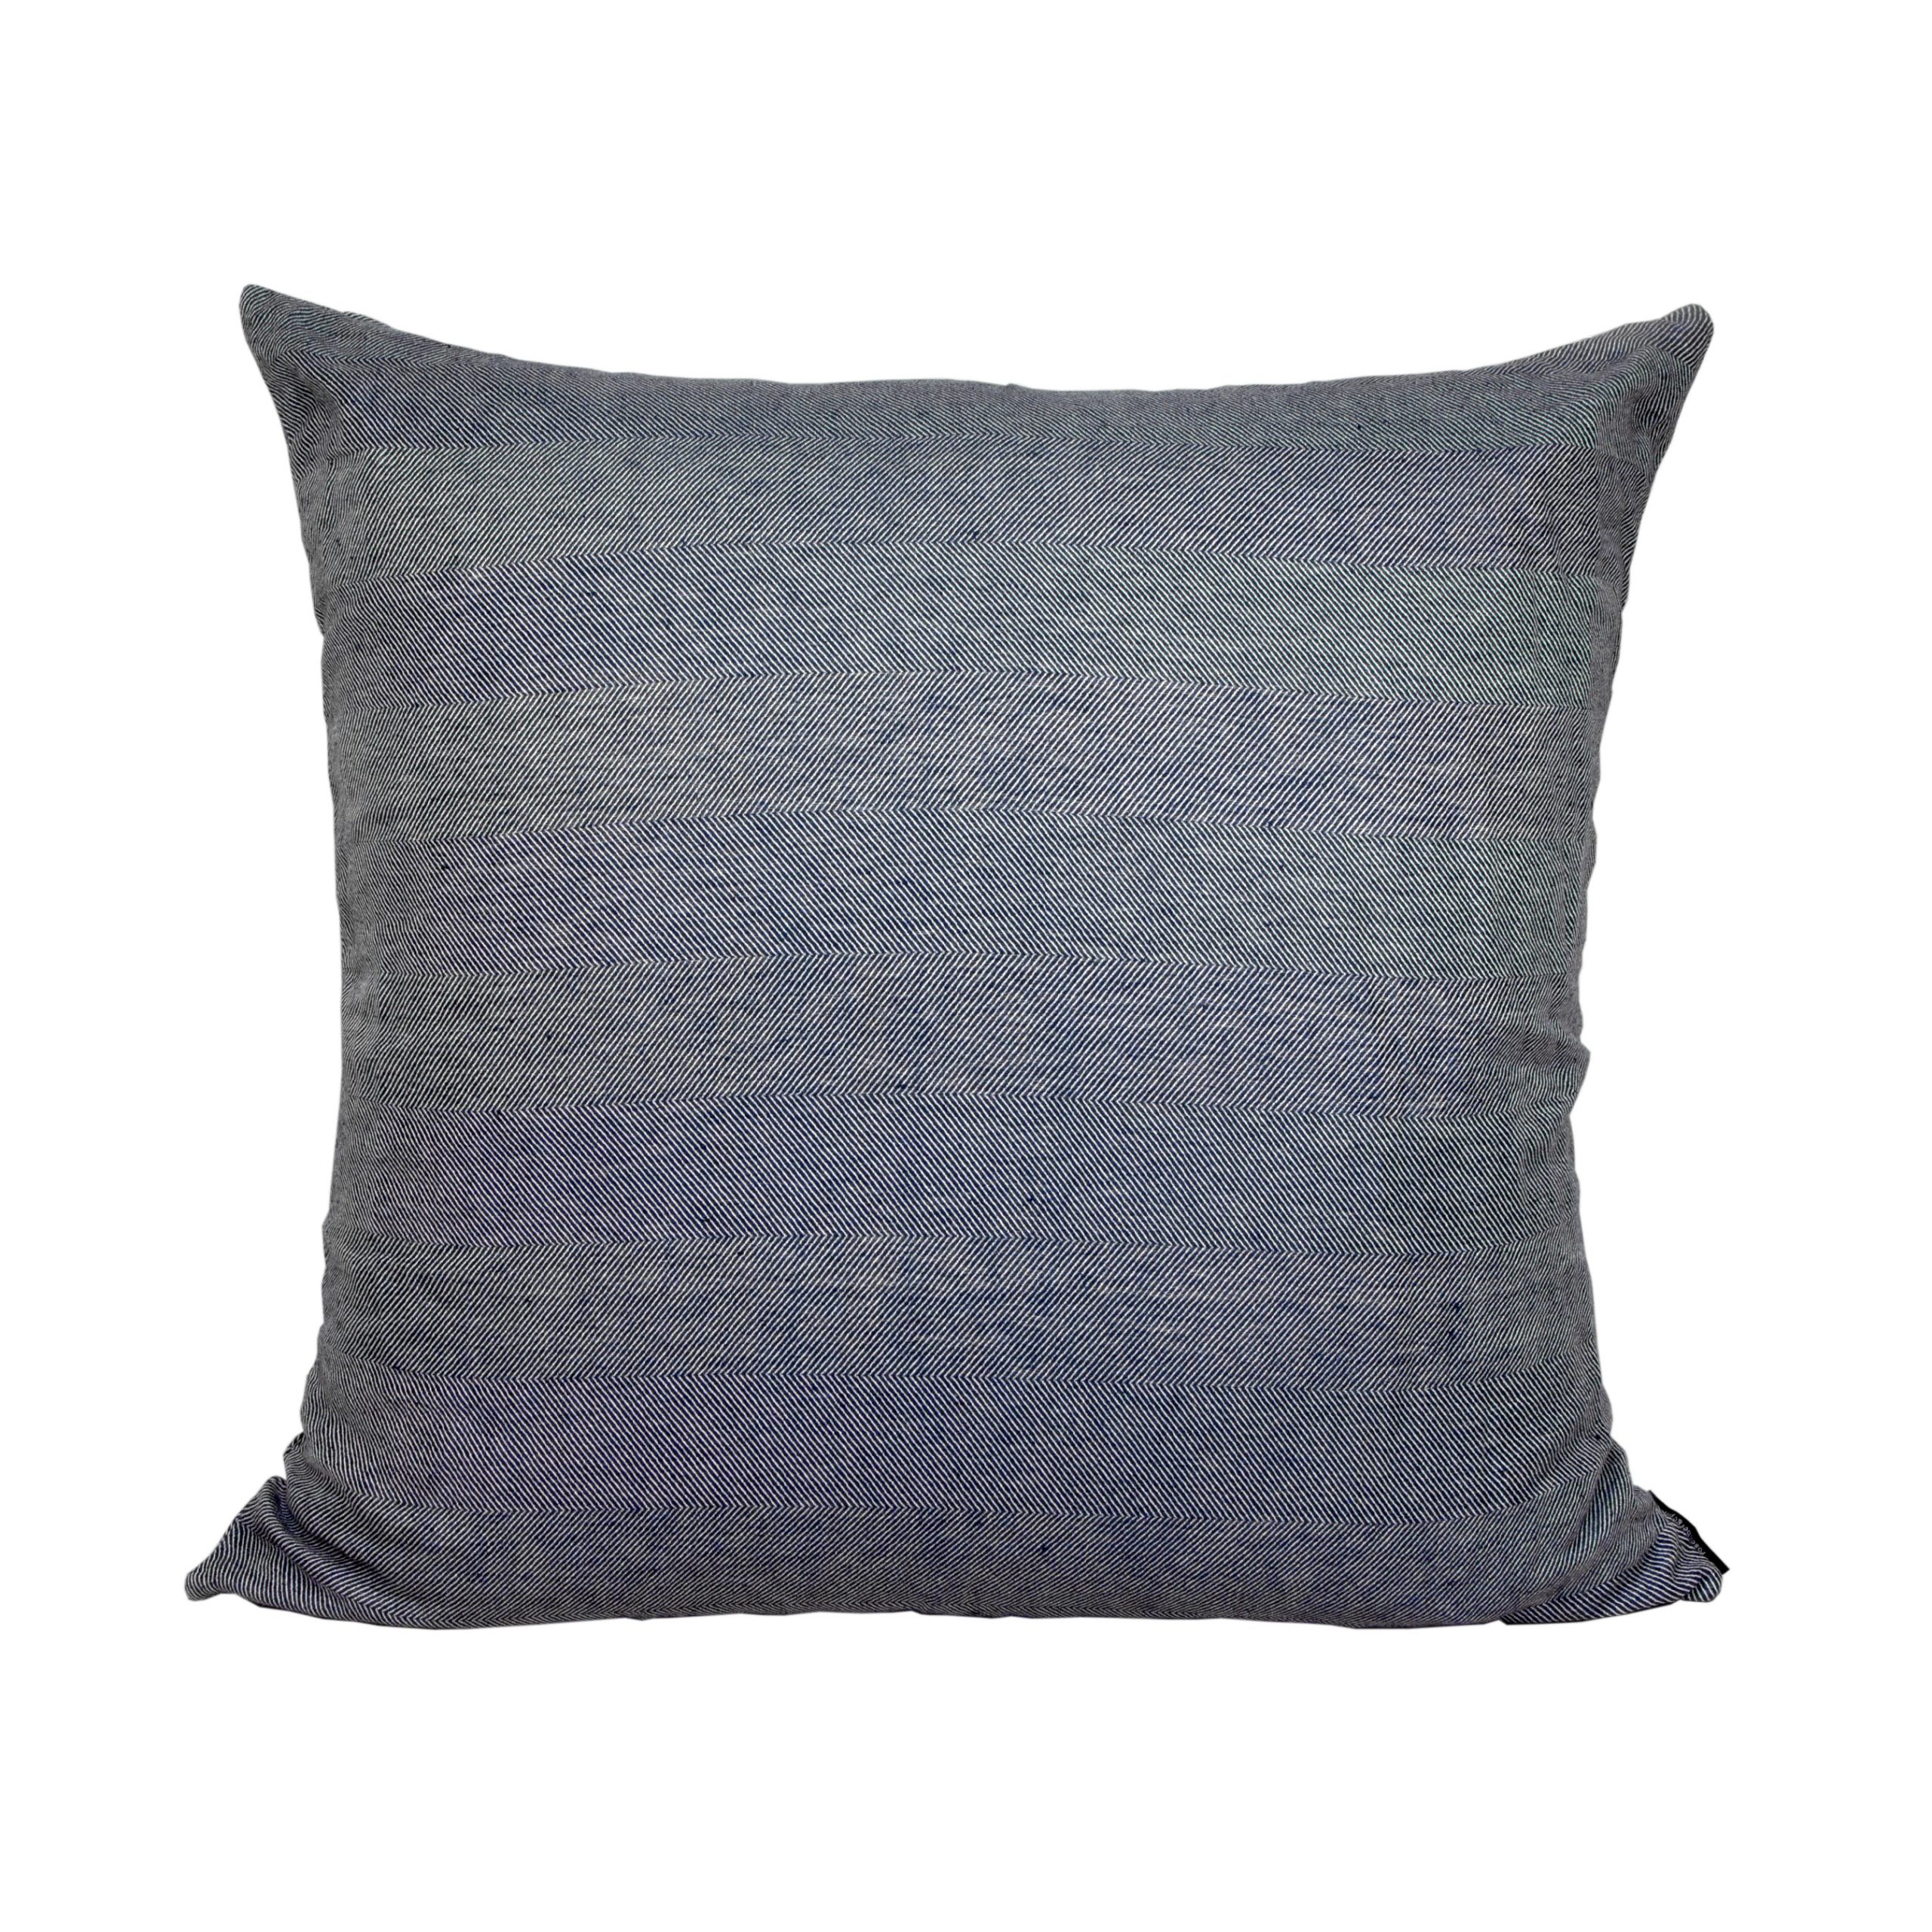 Floor cushion cover linen/cotton indigo blue design by Anne Rosenberg, RosenbergCph